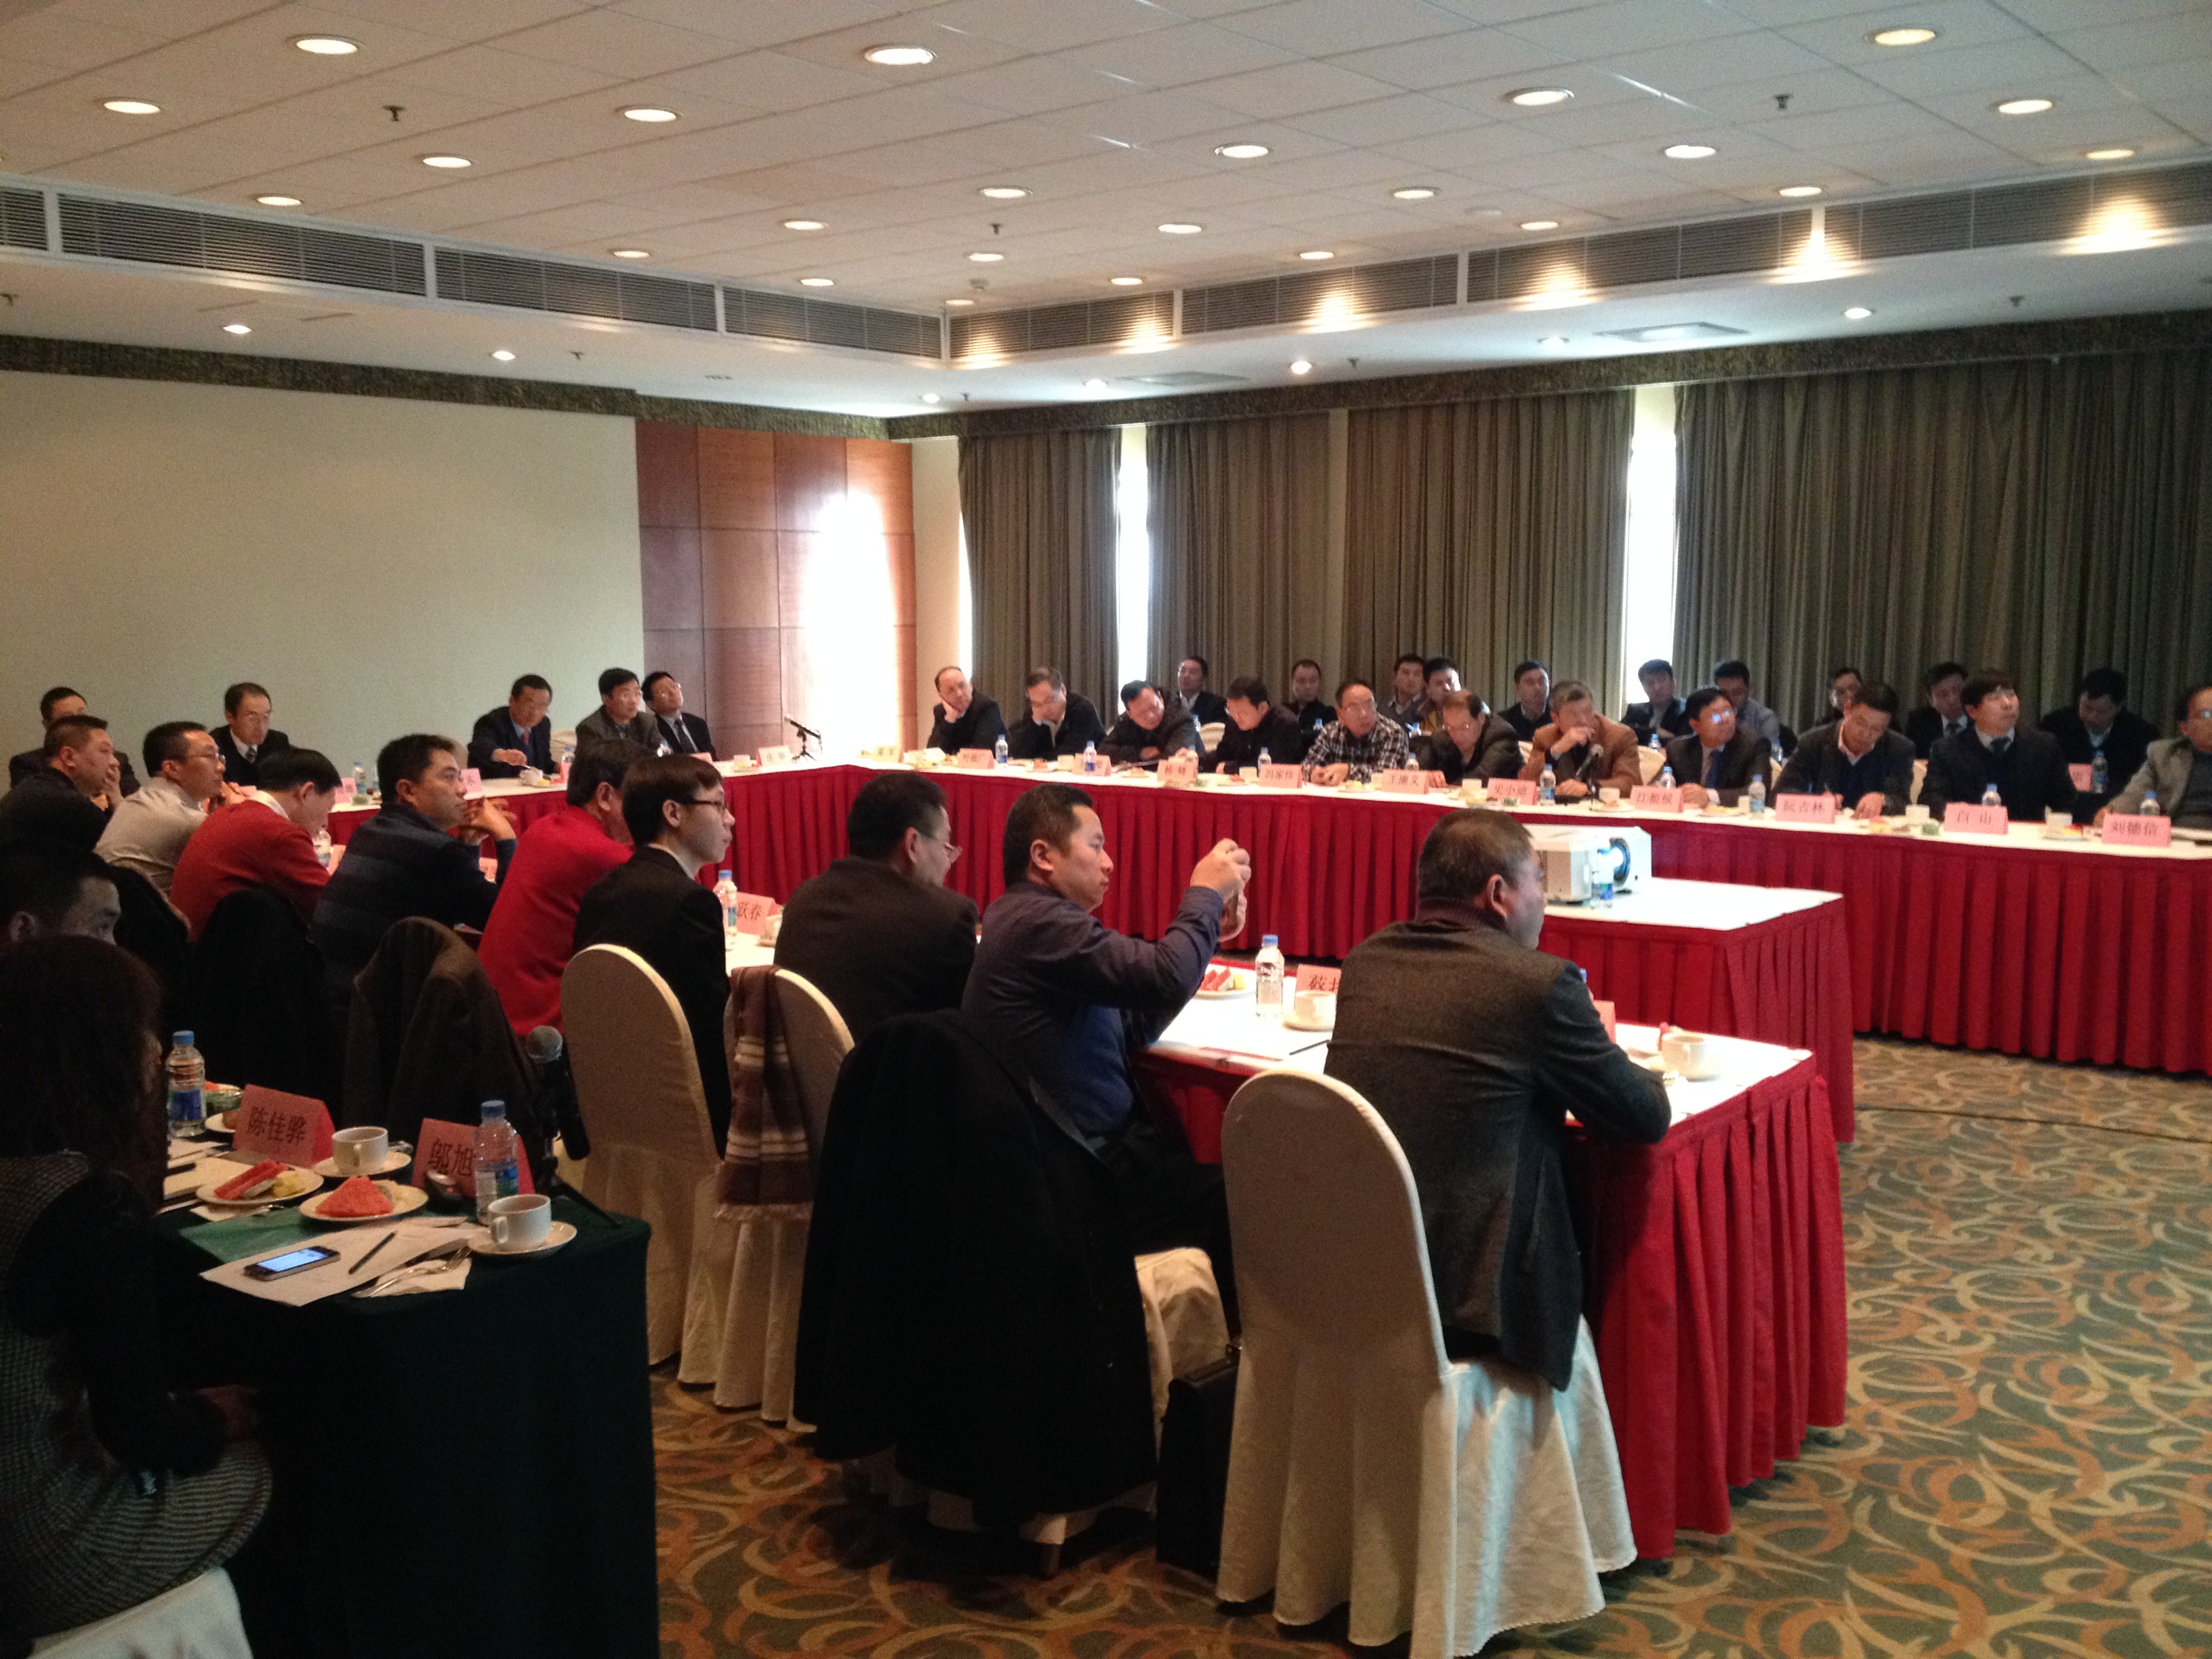 上海日立召开2014年度供应商座谈会